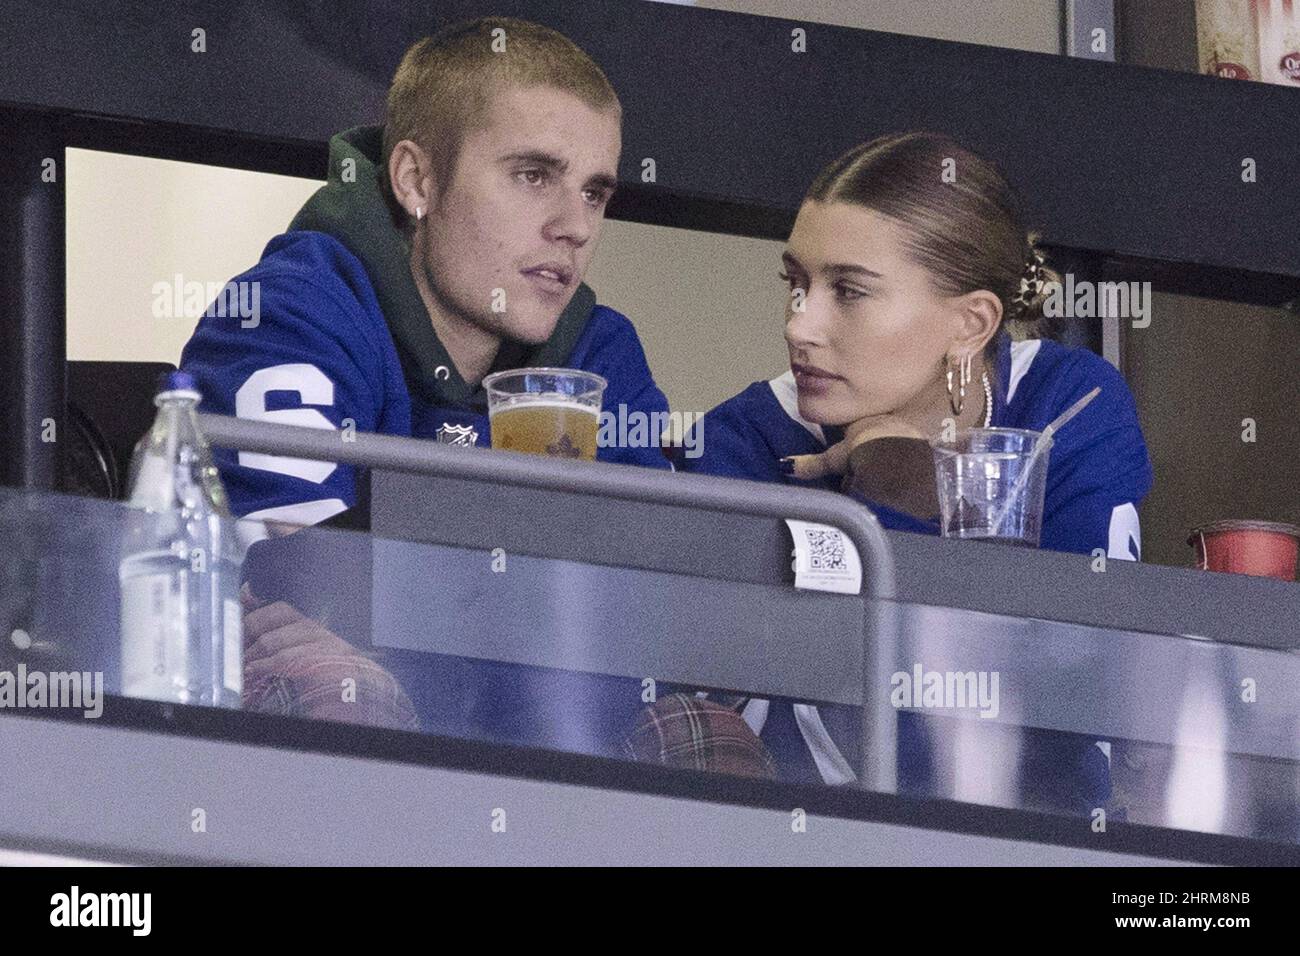 Justin Bieber - Hailey Baldwin, November 23, 2018 at Stratford Hockey Game  